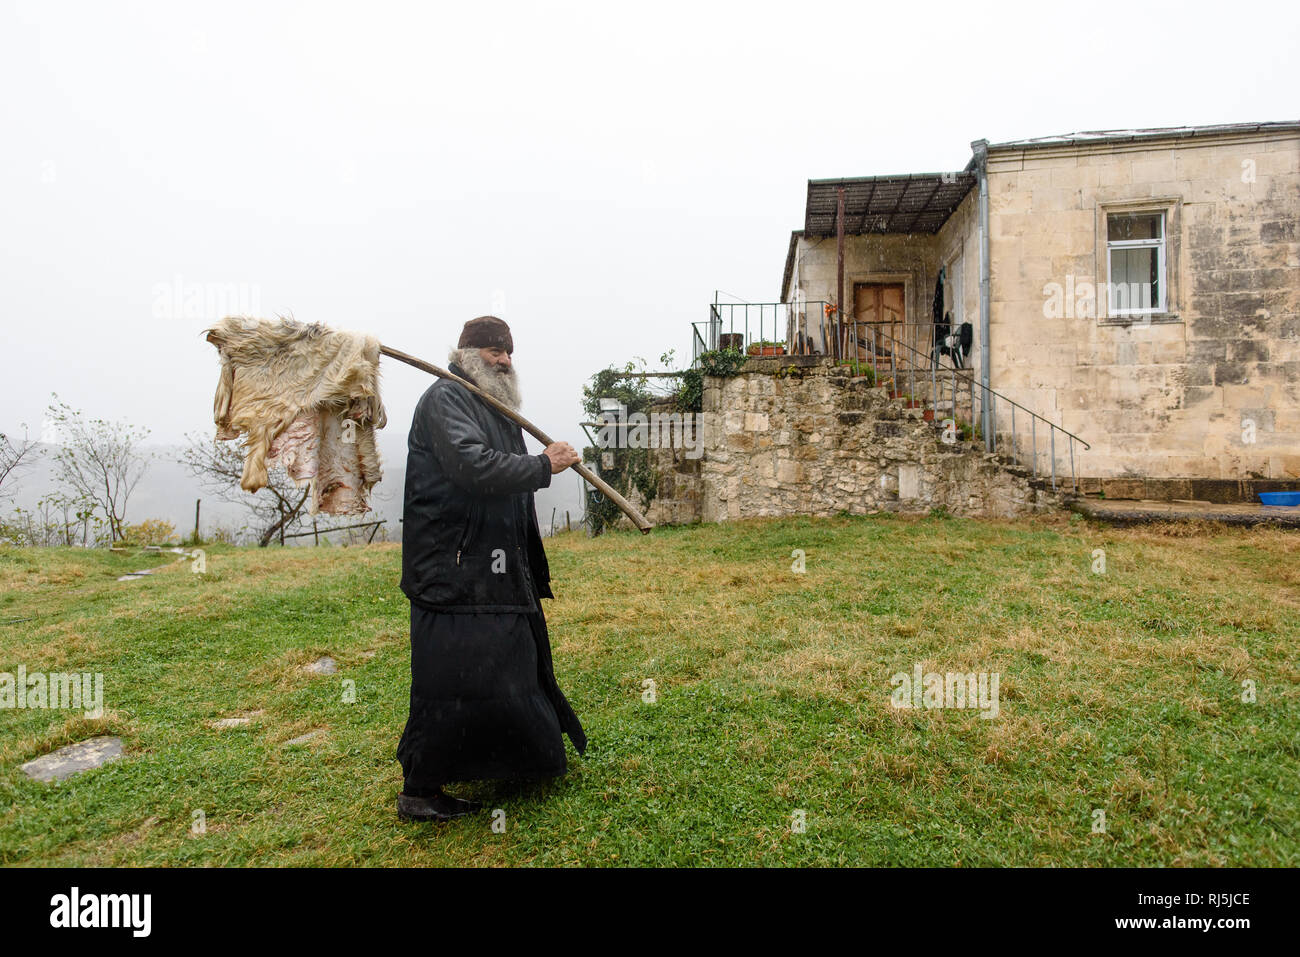 Dieser Priester hat gerade ein Schaf geschlachtet und bringt das Fell jetzt ins Haus um es zu trocknen. Roadtrip durch Georgien im Oktober 2016. Stock Photo